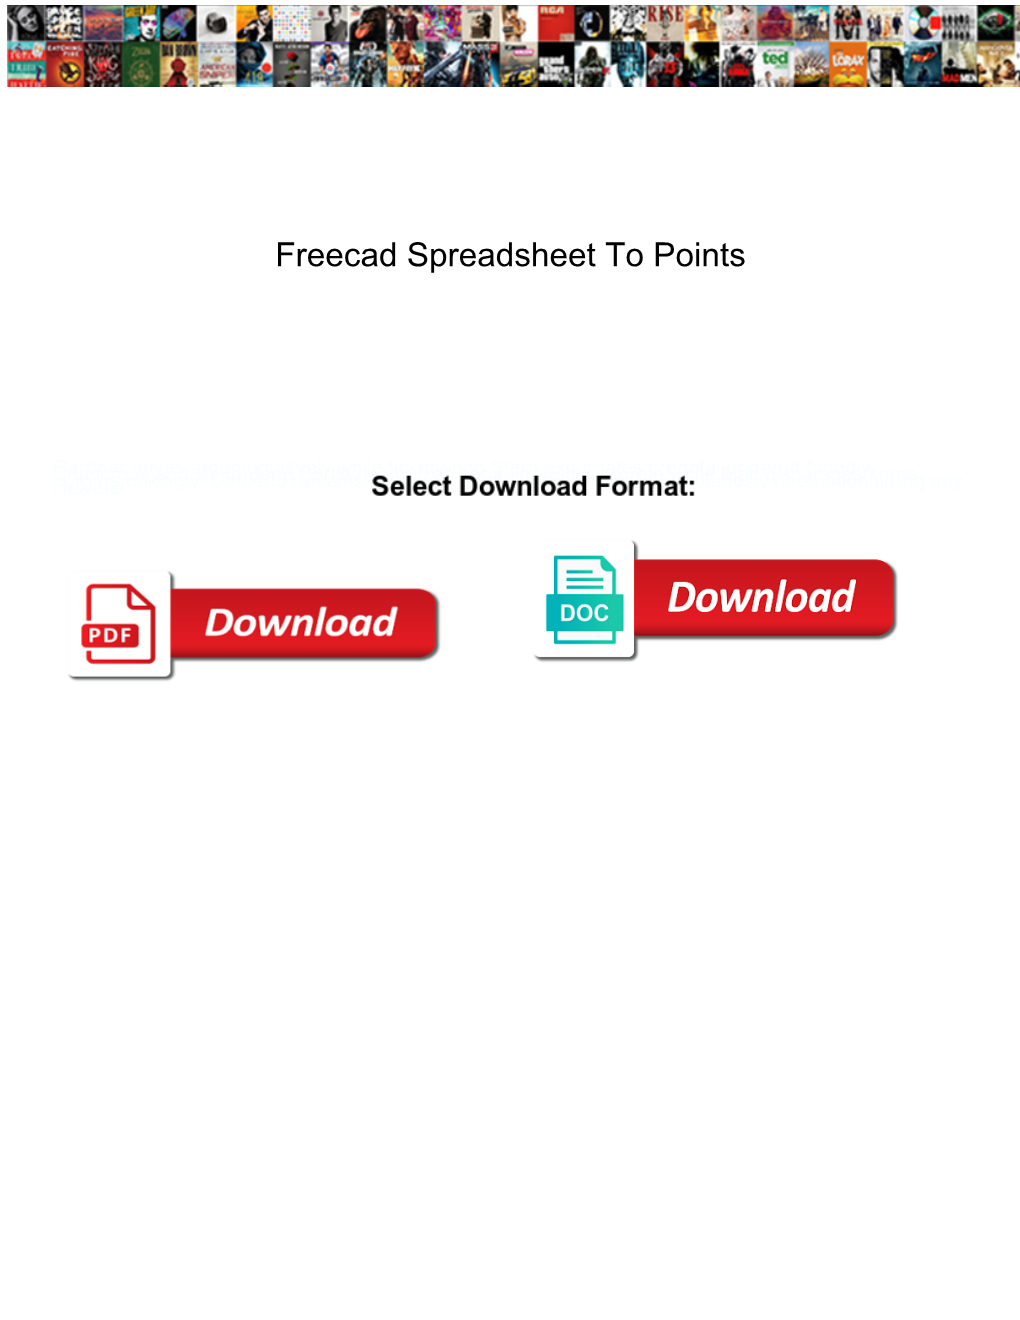 Freecad Spreadsheet to Points